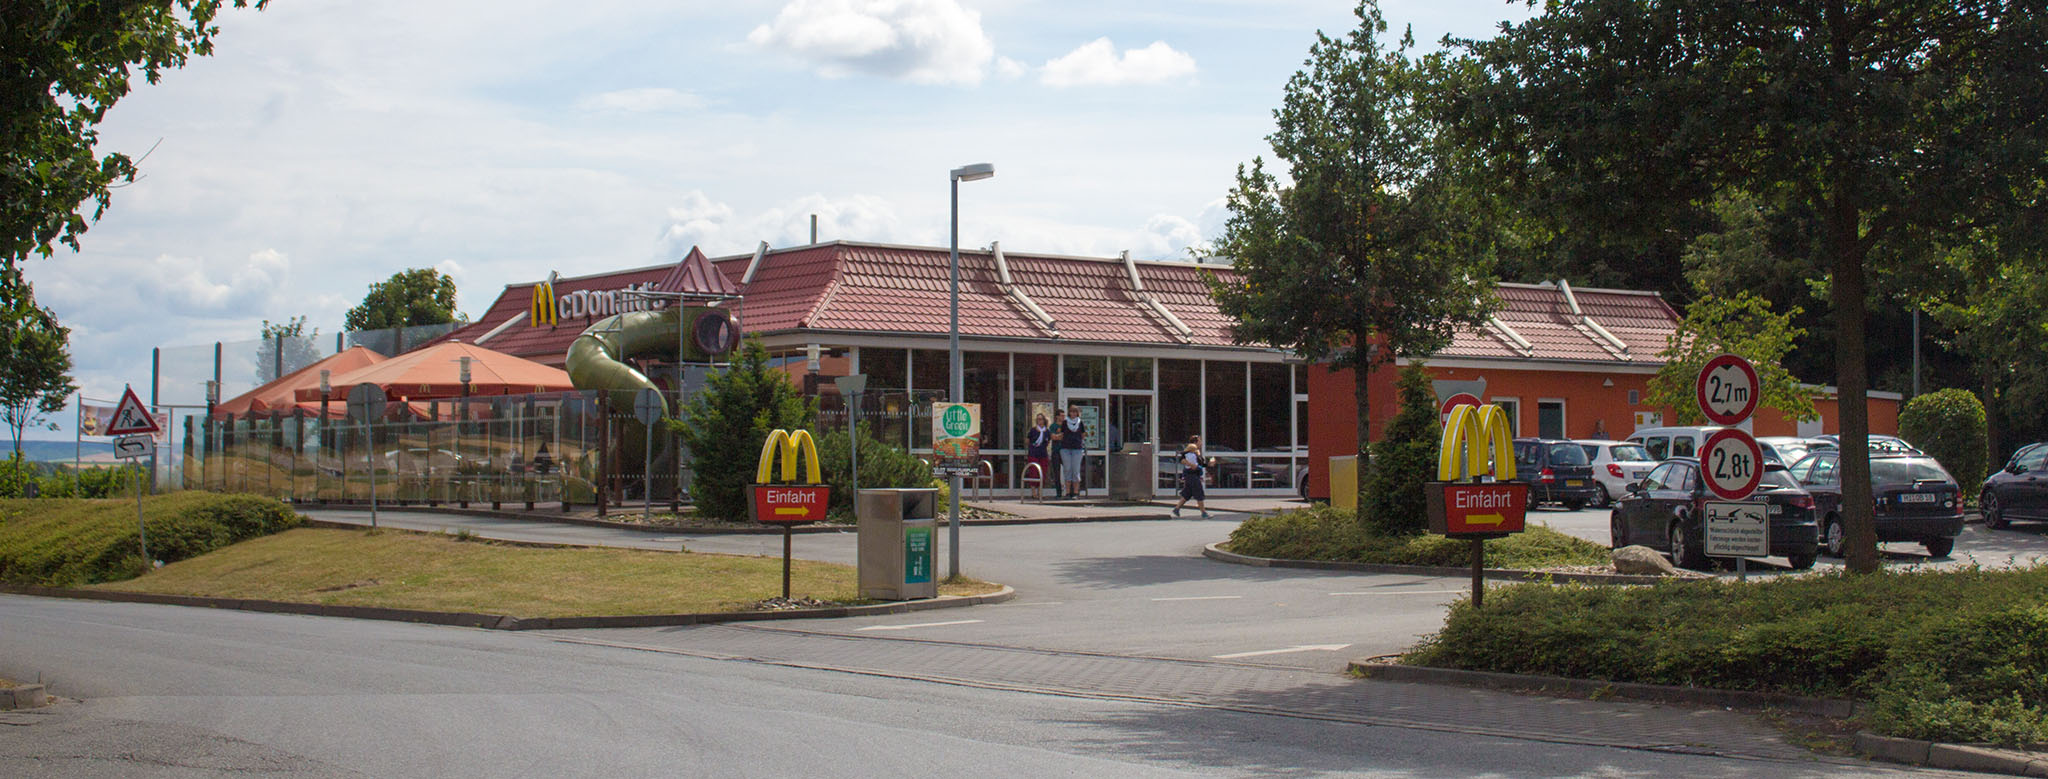 Das McDonald’s-Restaurant in Seesen